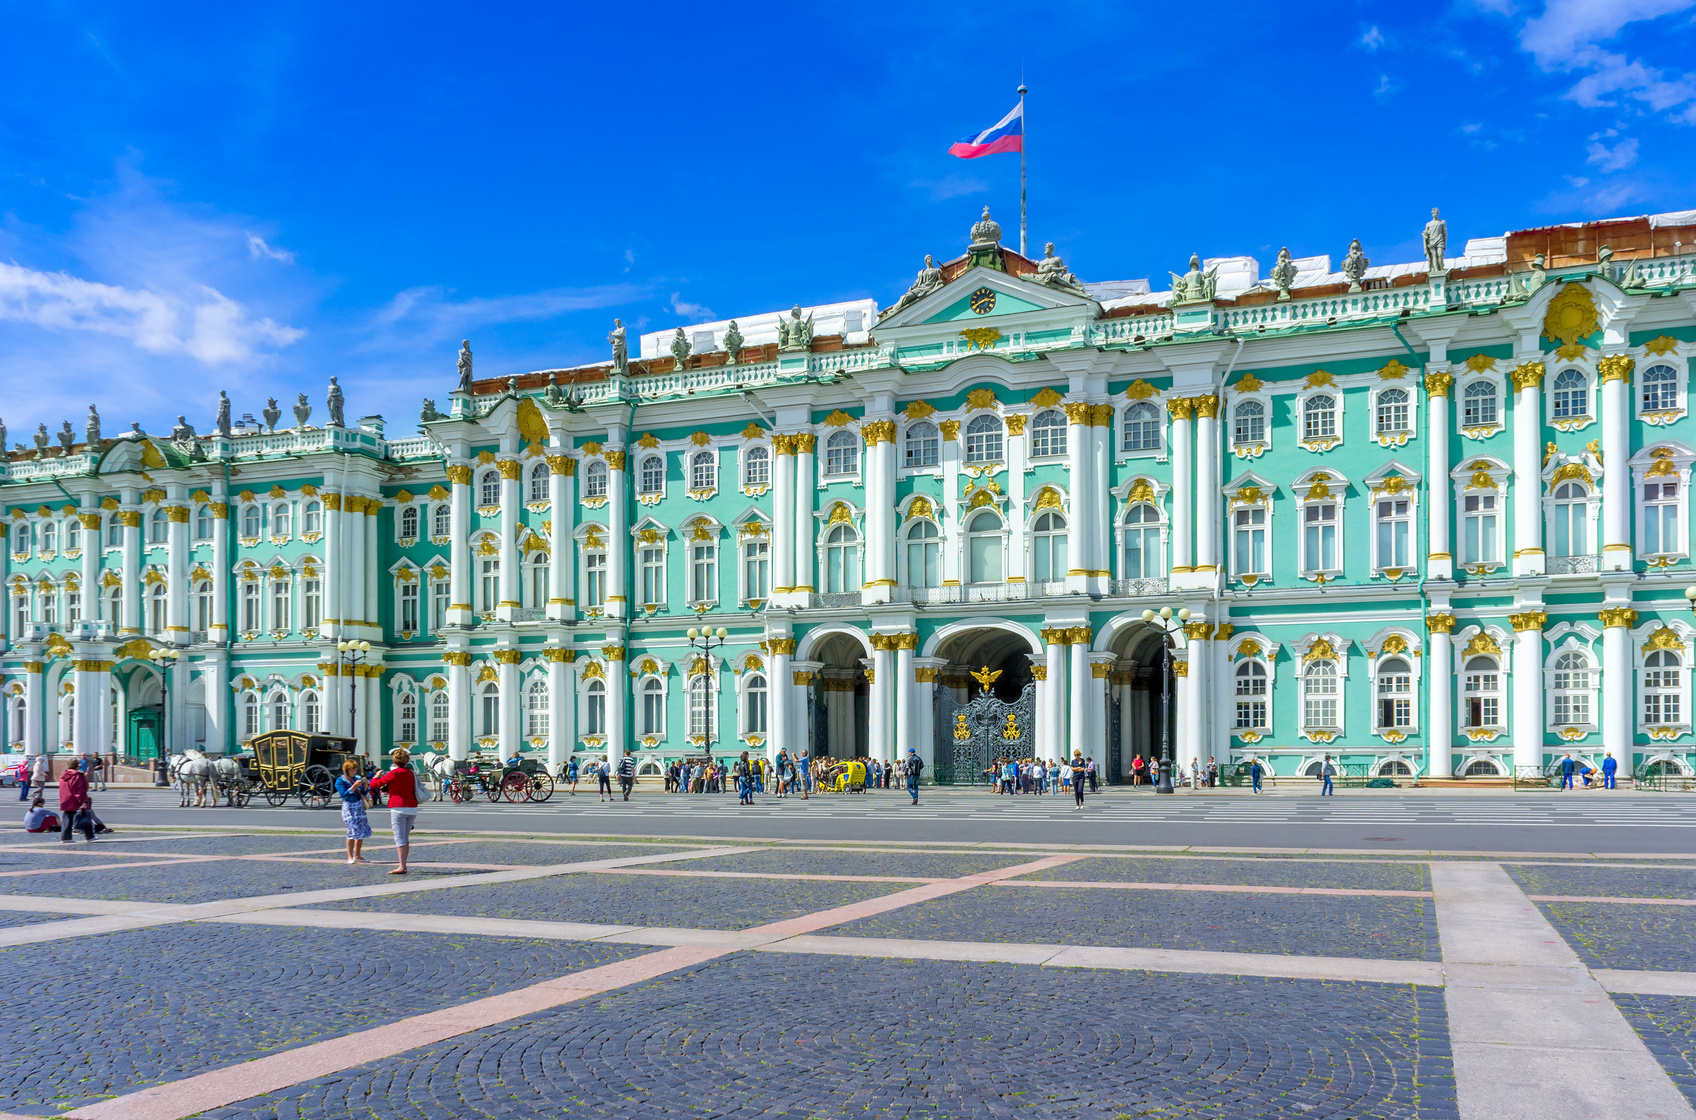 Le palais d'hiver, qui compose l'Ermitage, était autrefois la résidence des empereurs russes. © den781, fotolia